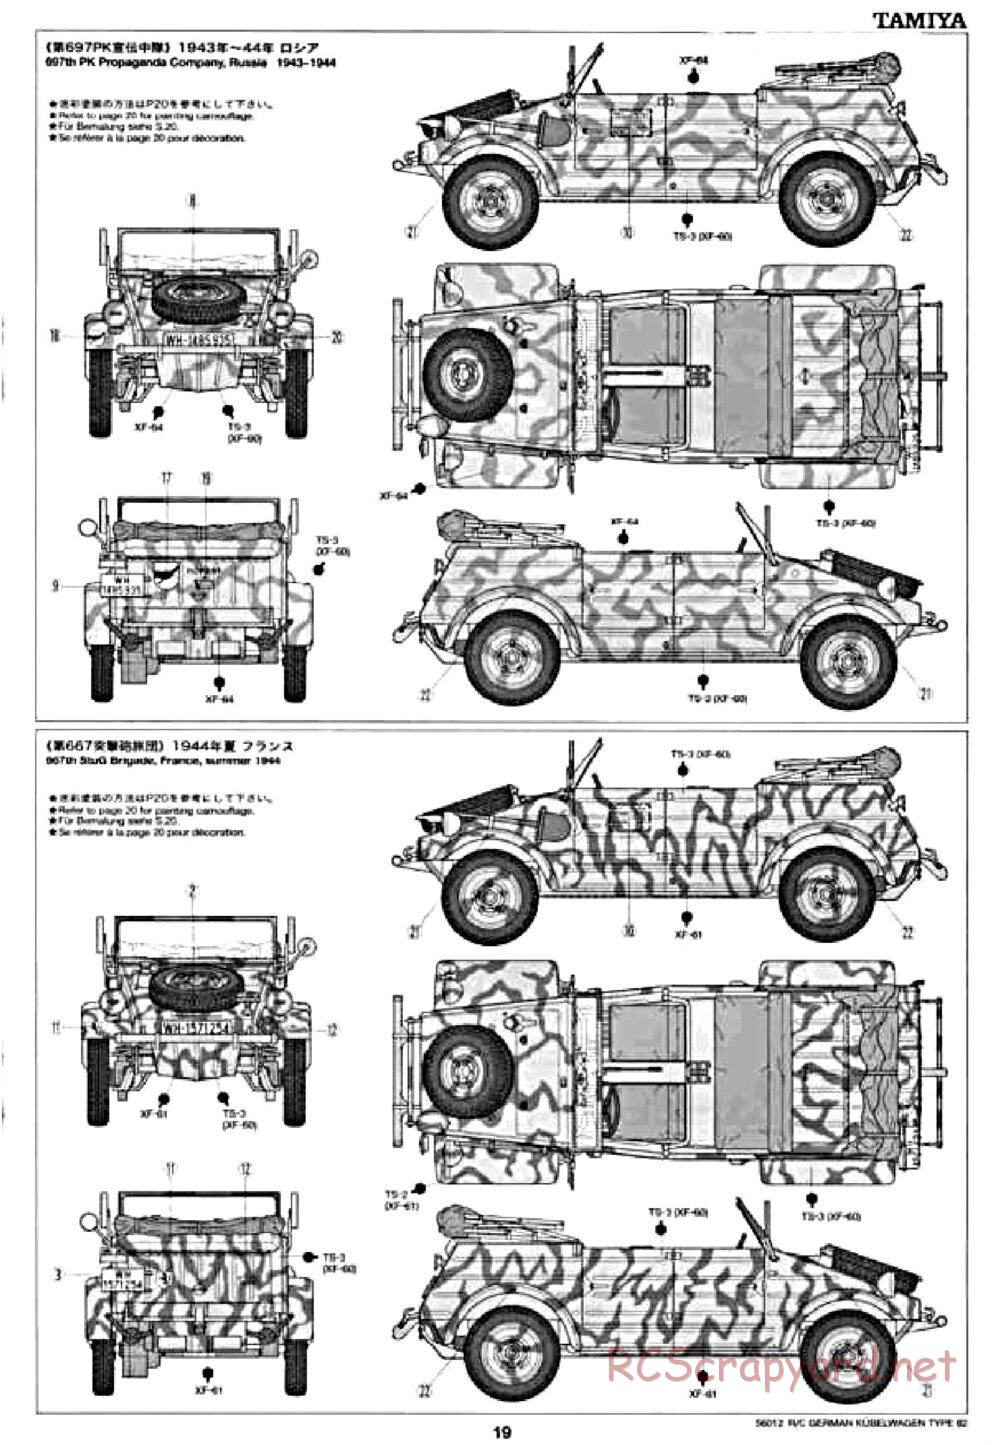 Tamiya - Kubelwagen Type 82 Chassis - Manual - Page 19